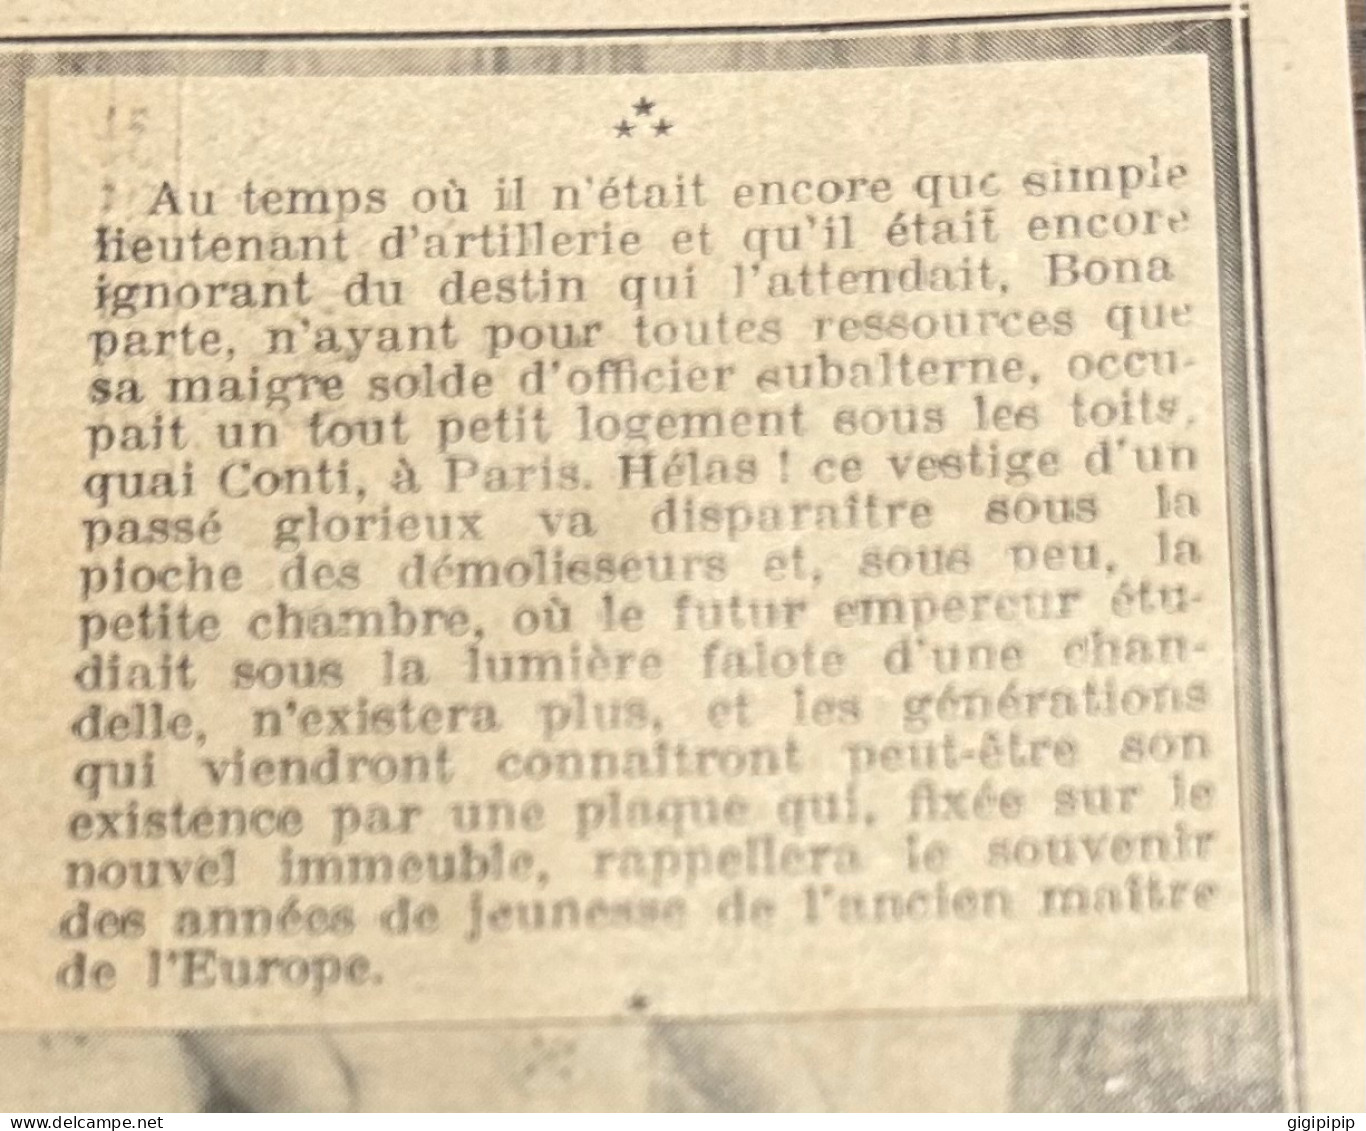 1930 GHI16 MAISON HABITEE PAR NAPOLÉON BONAPARTE QUAND IL ETAIT LIEUTENANT D'ARTILLERIE, A PARIS, QUI VA ETRE DEMOLIE - Collezioni